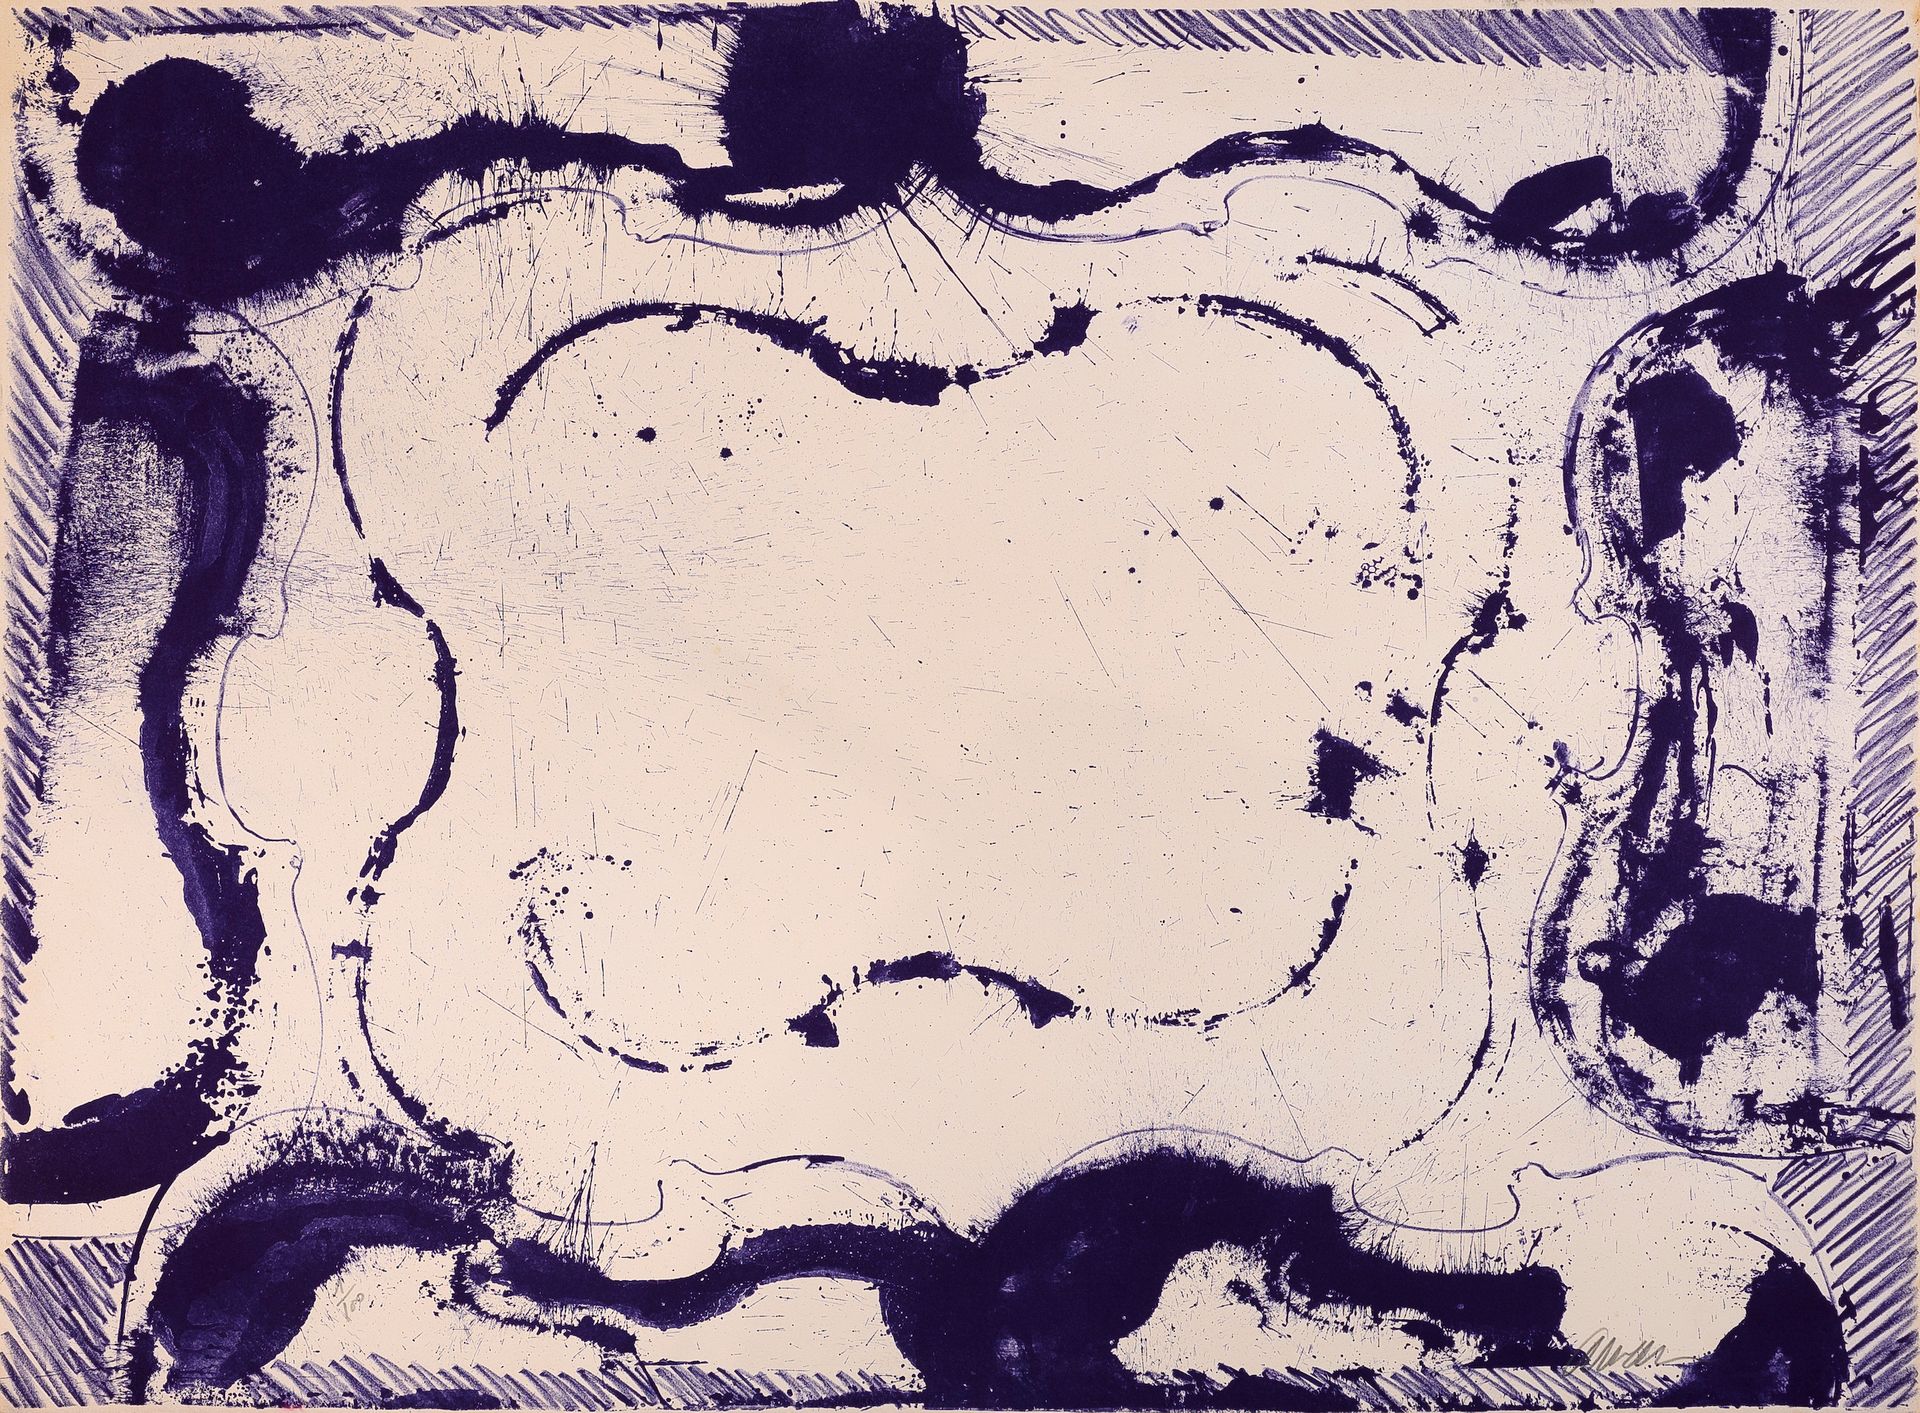 Null 阿尔曼(1928-2005)

小提琴与紫色框架，1973年

石版画

有签名和编号的1/100

56 x 76 厘米

在艺术家的作品目录中提到&hellip;